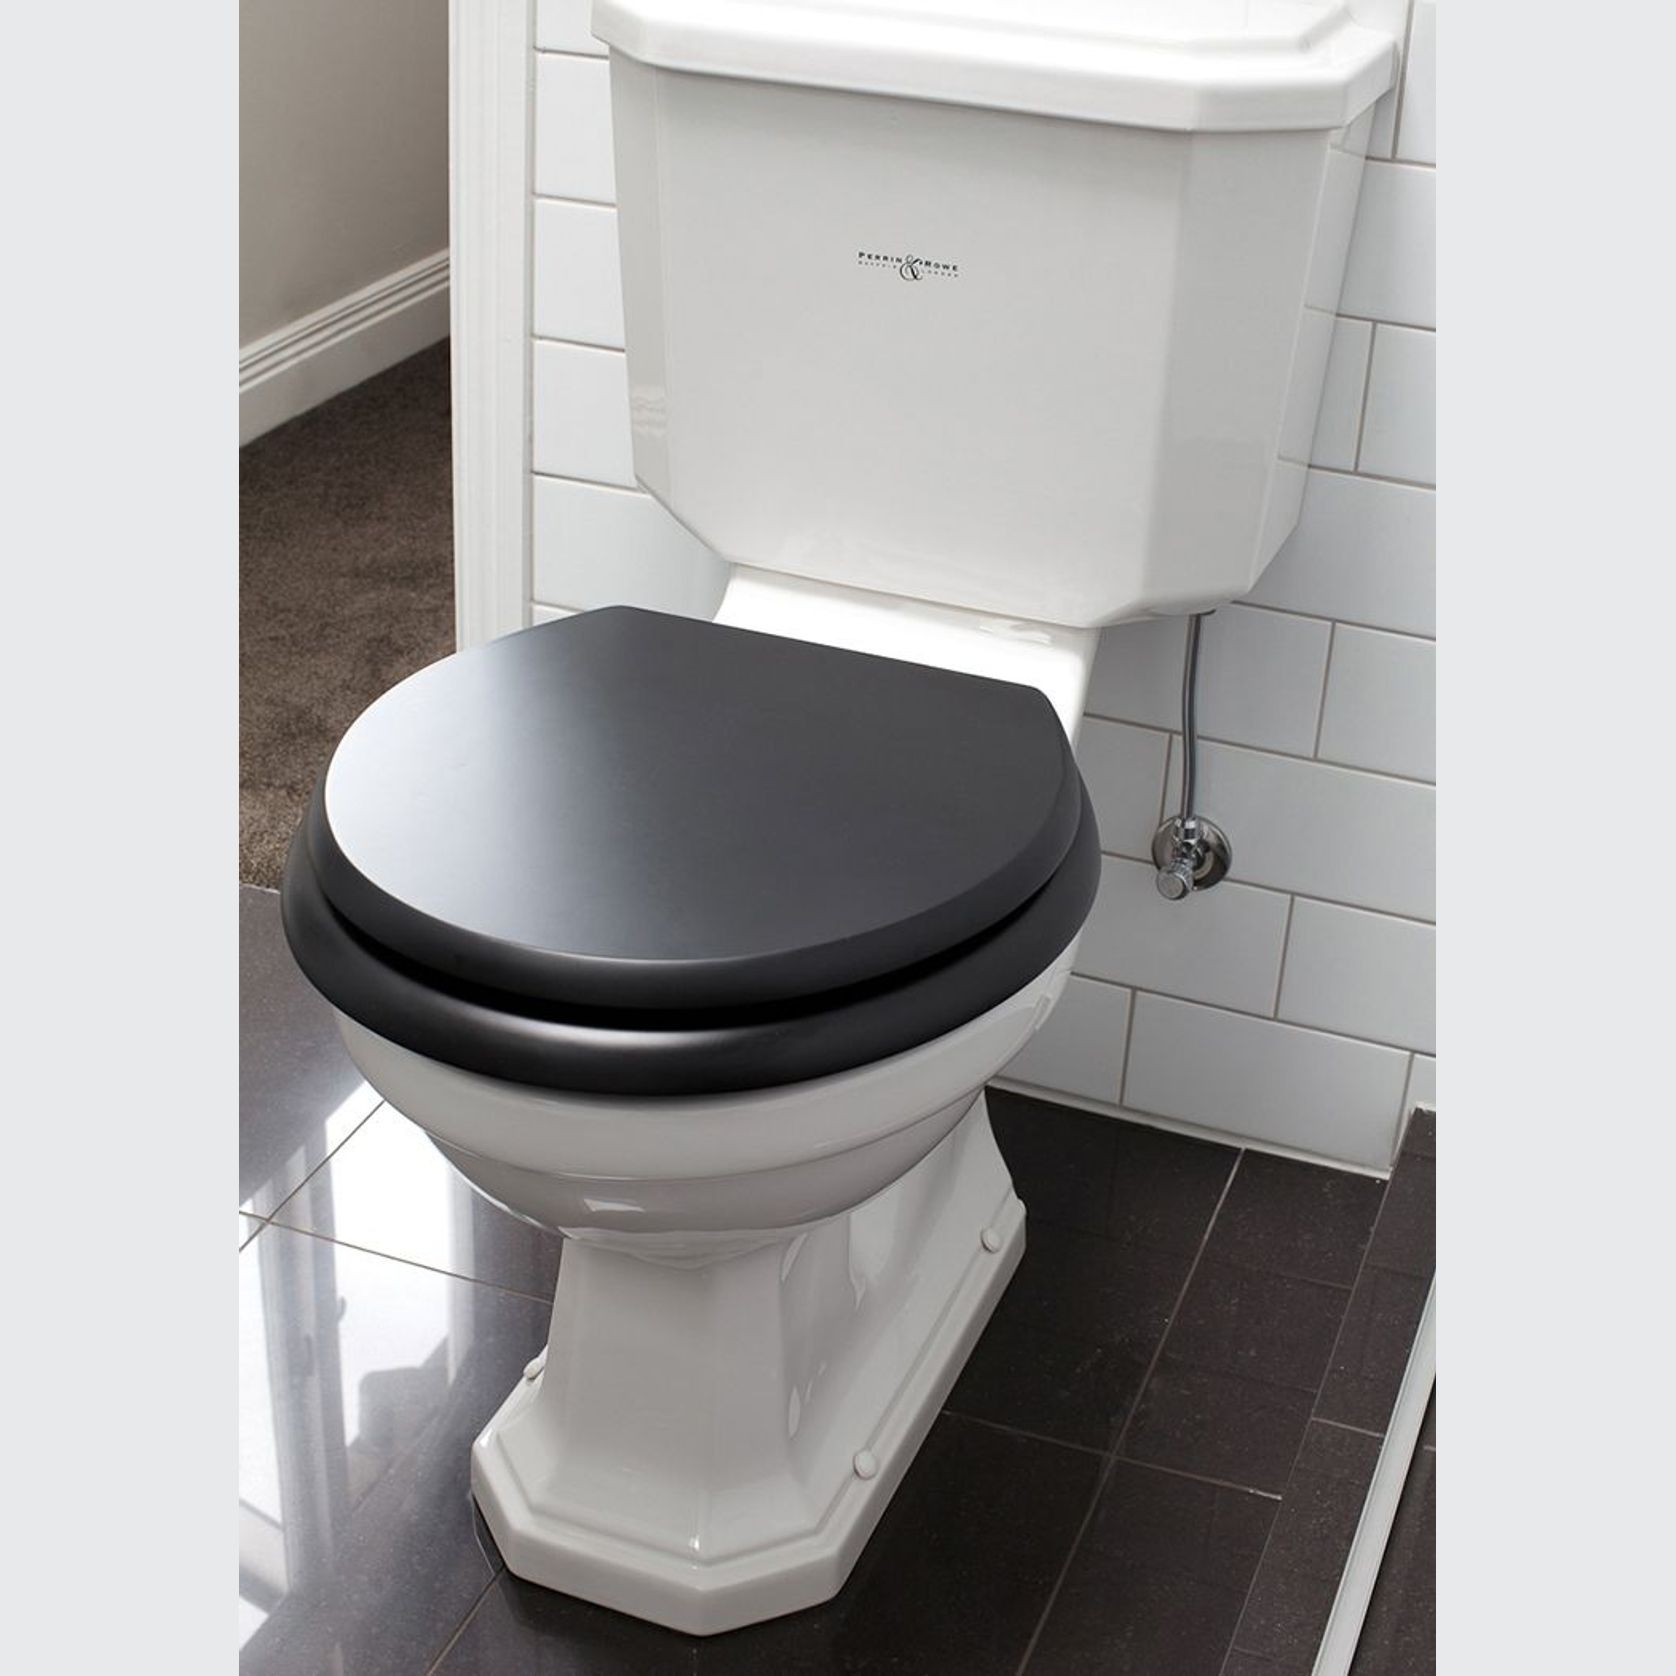 Perrin & Rowe Art Deco toilet gallery detail image